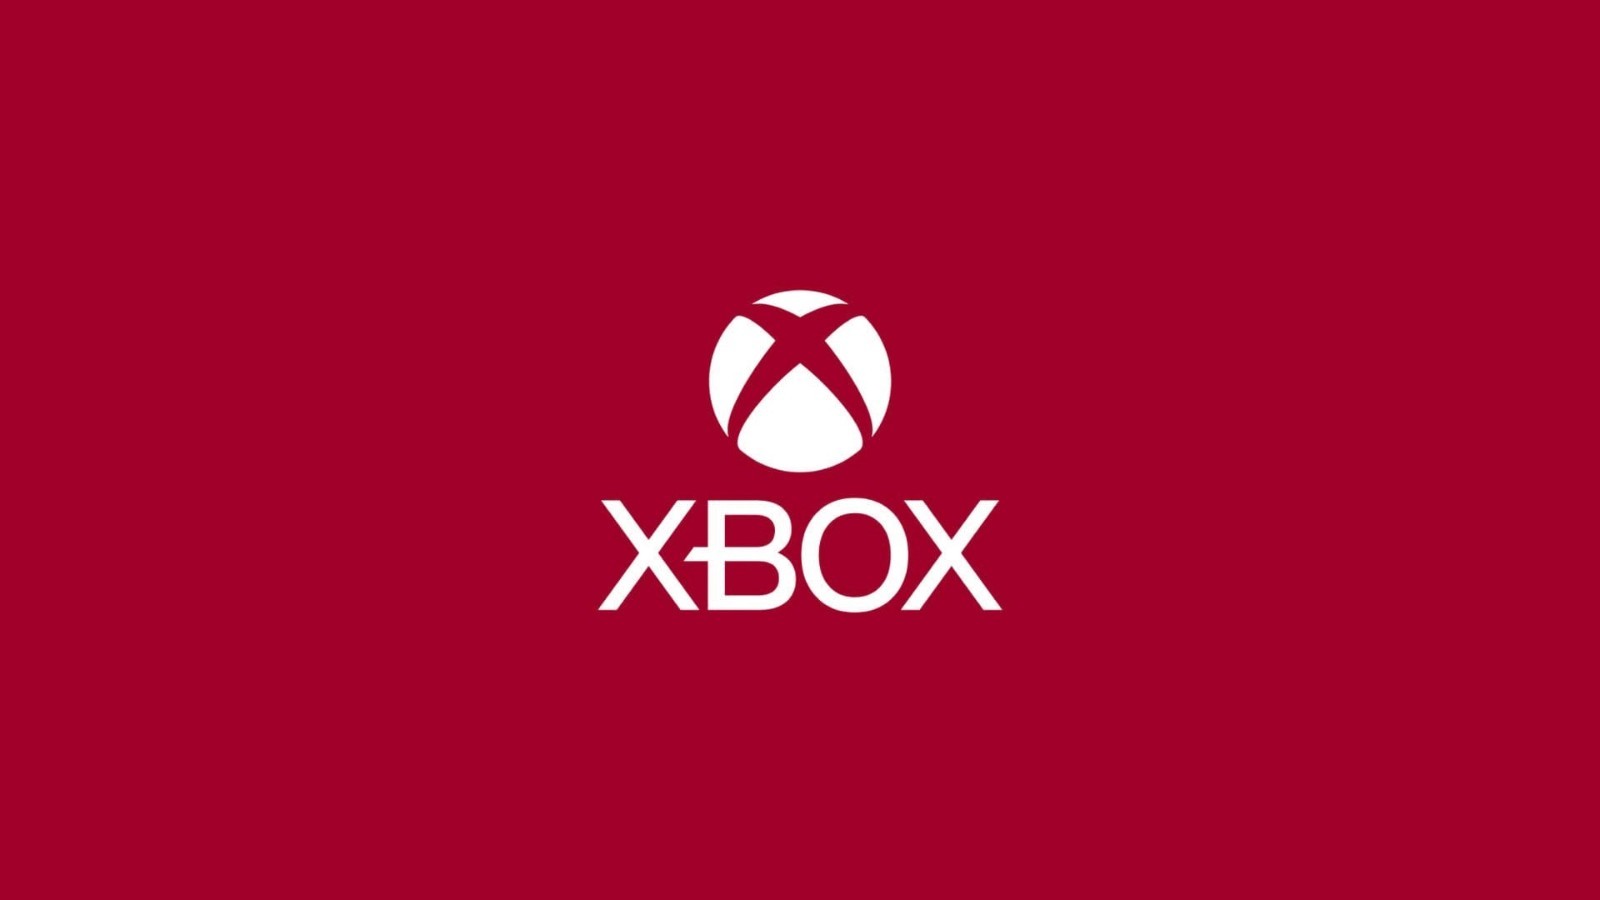 【主机游戏】Xbox推出针对仇恨言论/作弊等行为的监督系统